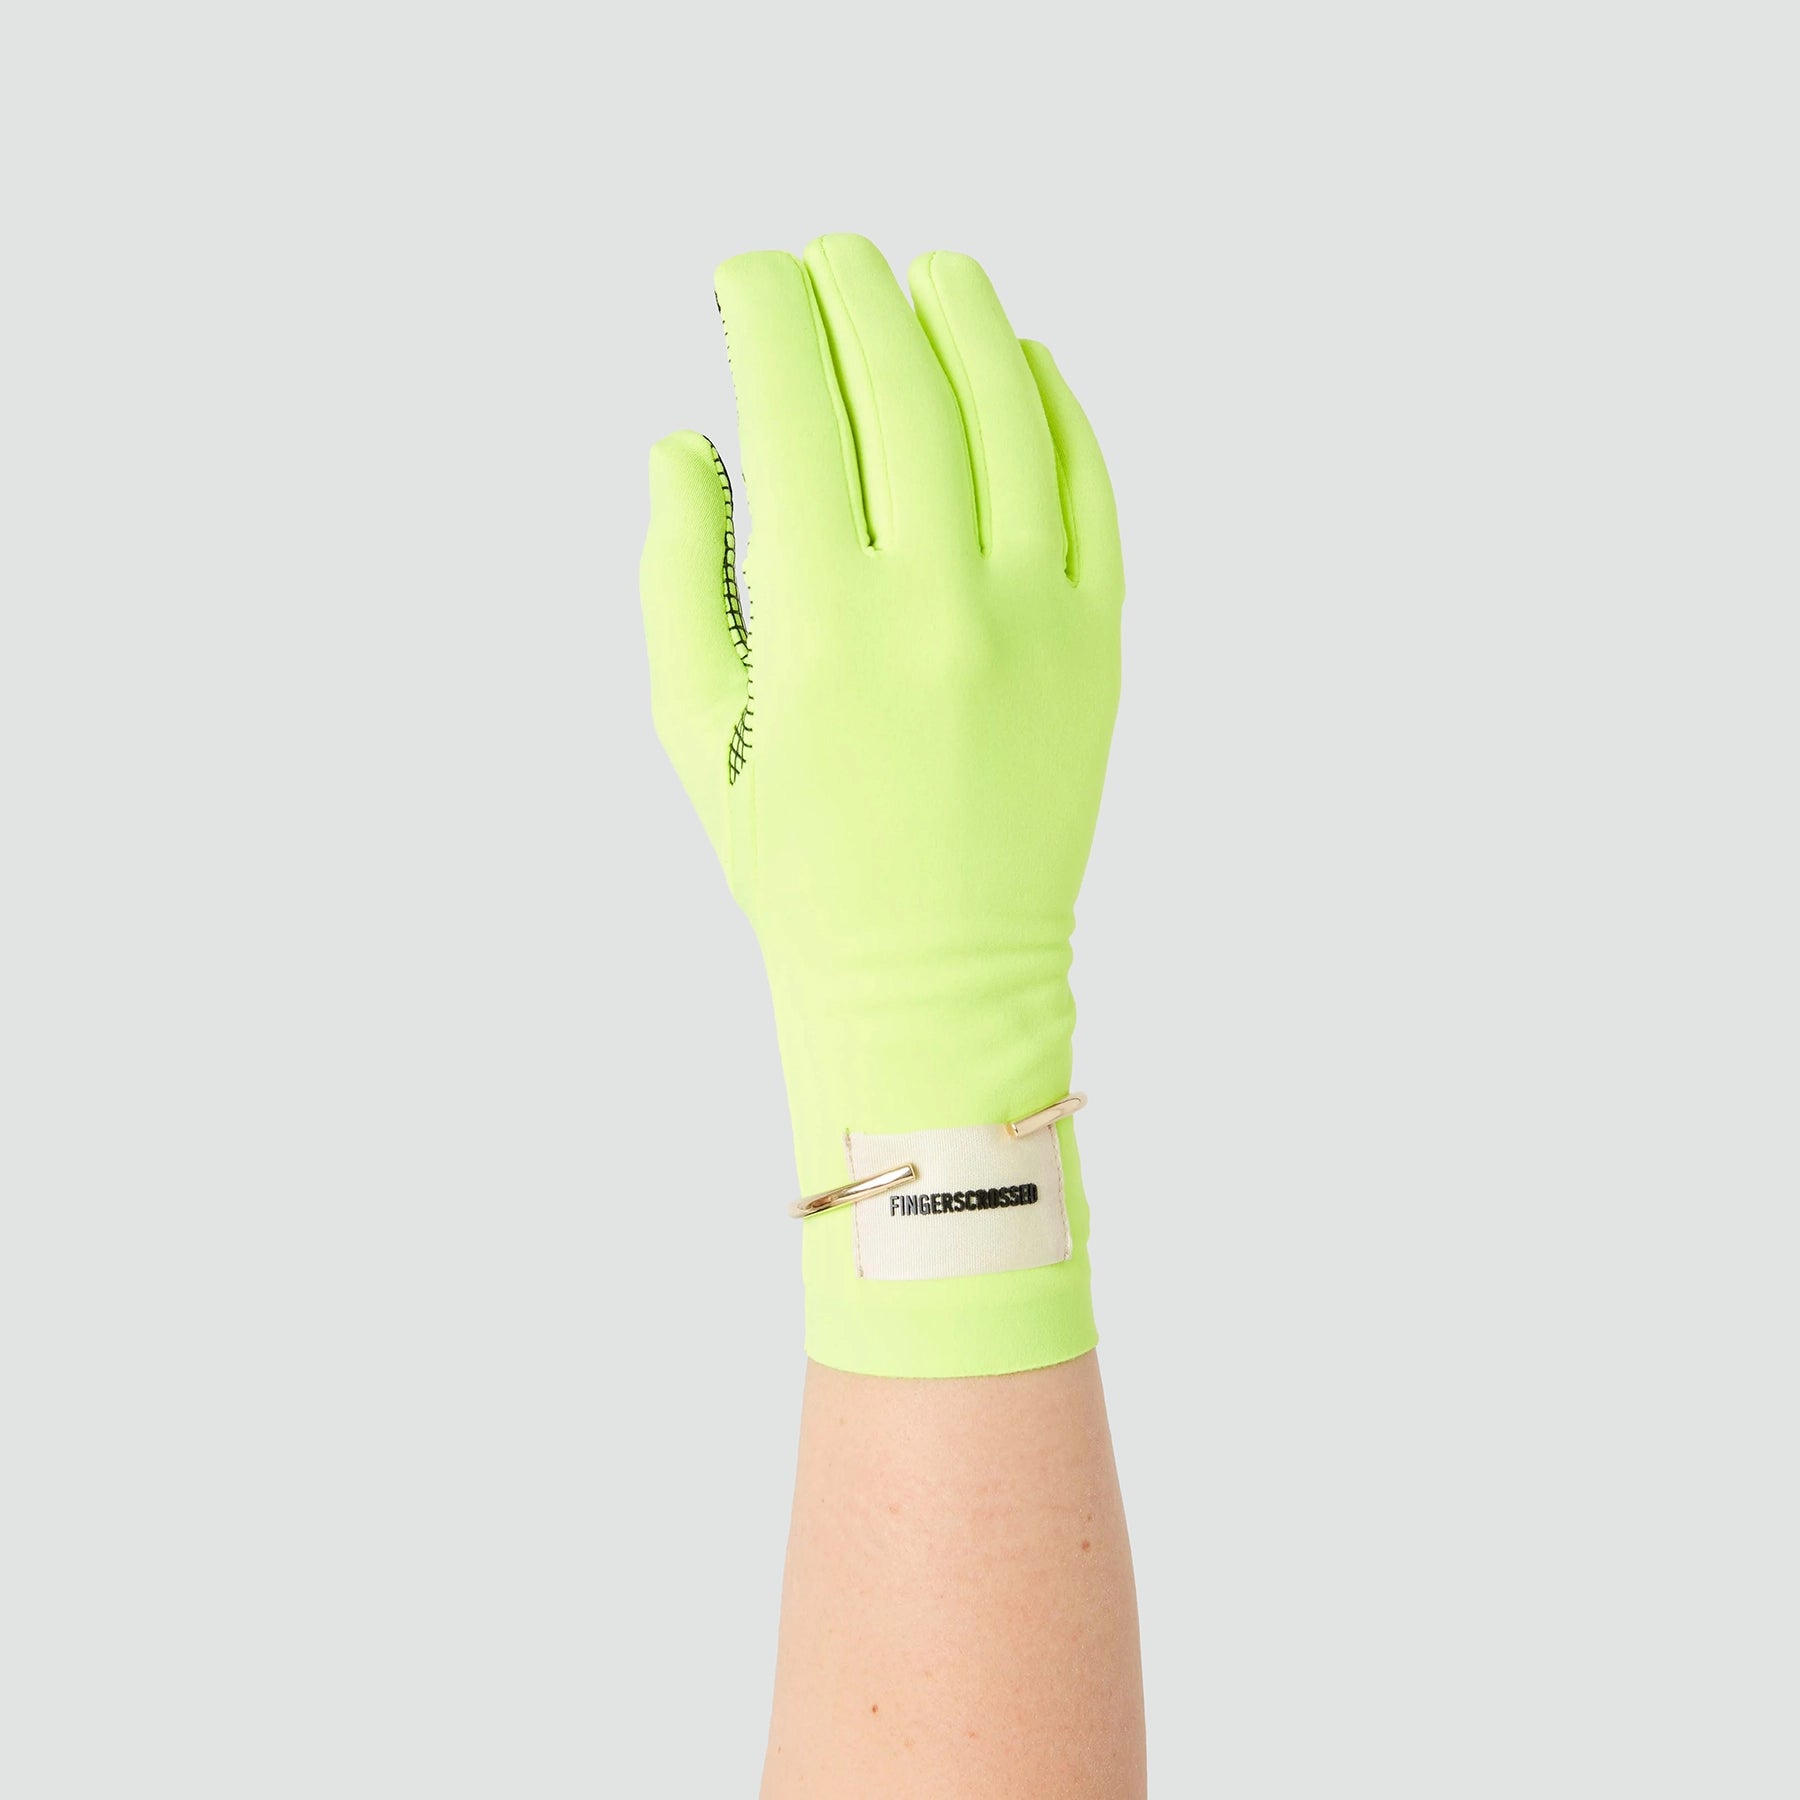 Midseason Gloves - Neon